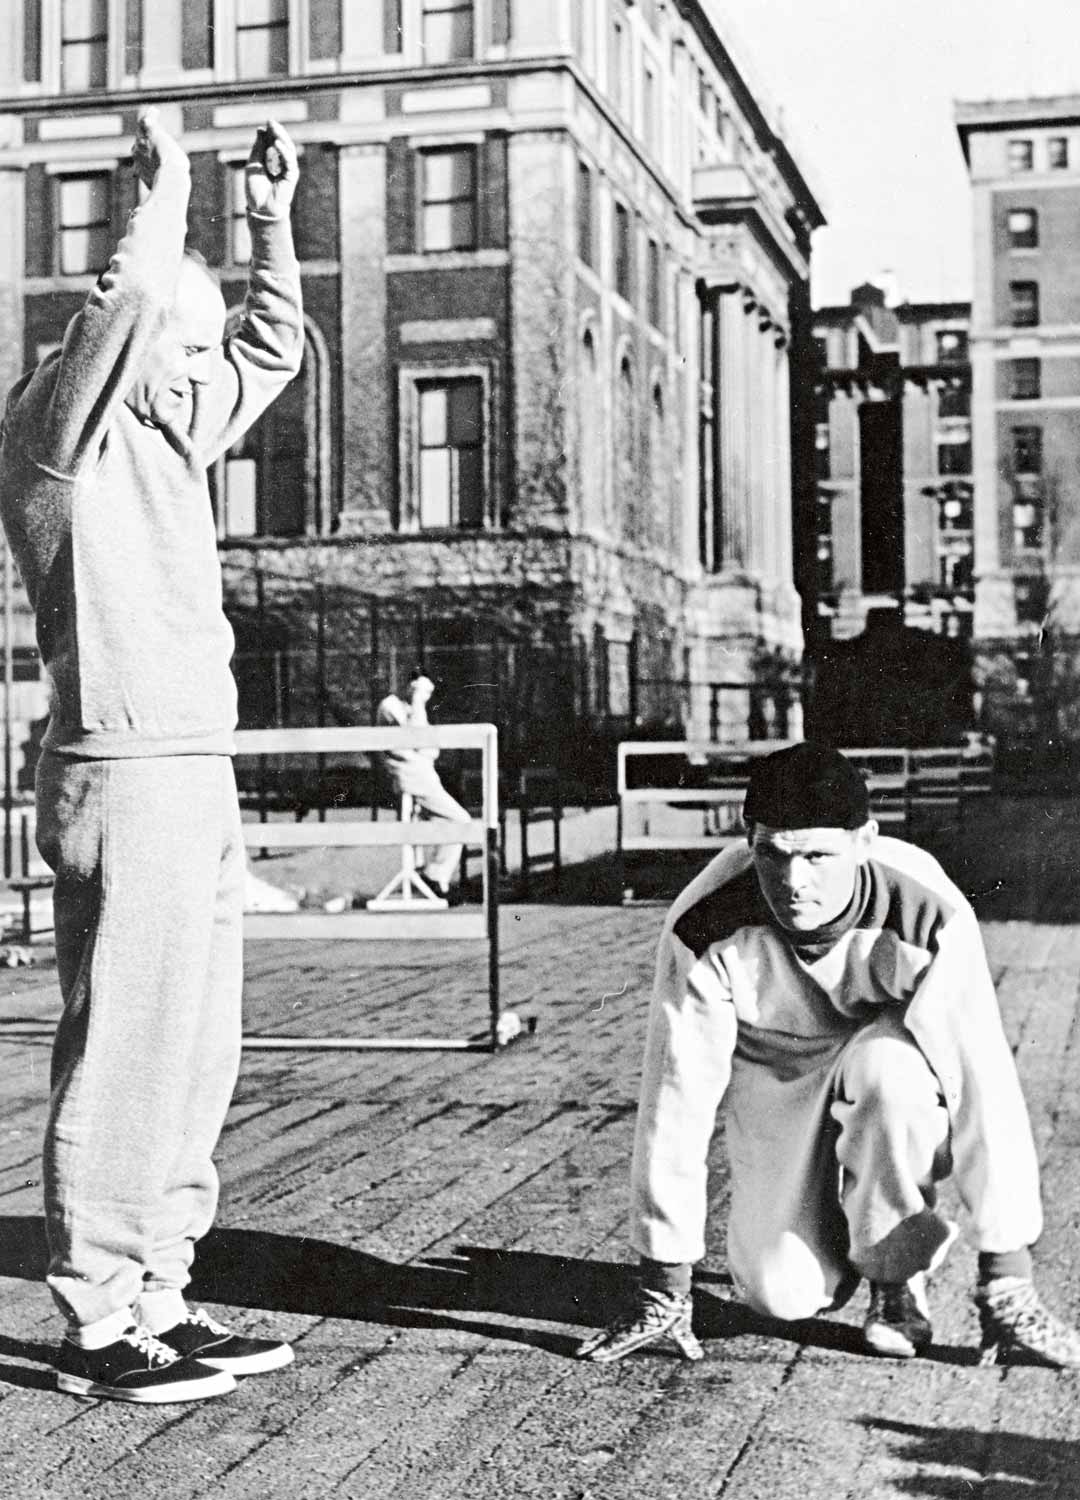 Ennen ensimmäisiä kilpailujaan Taisto Mäki harjoitteli Paavo Nurmen johdolla hotellinsa katolla keskellä New Yorkin kivierämaata.